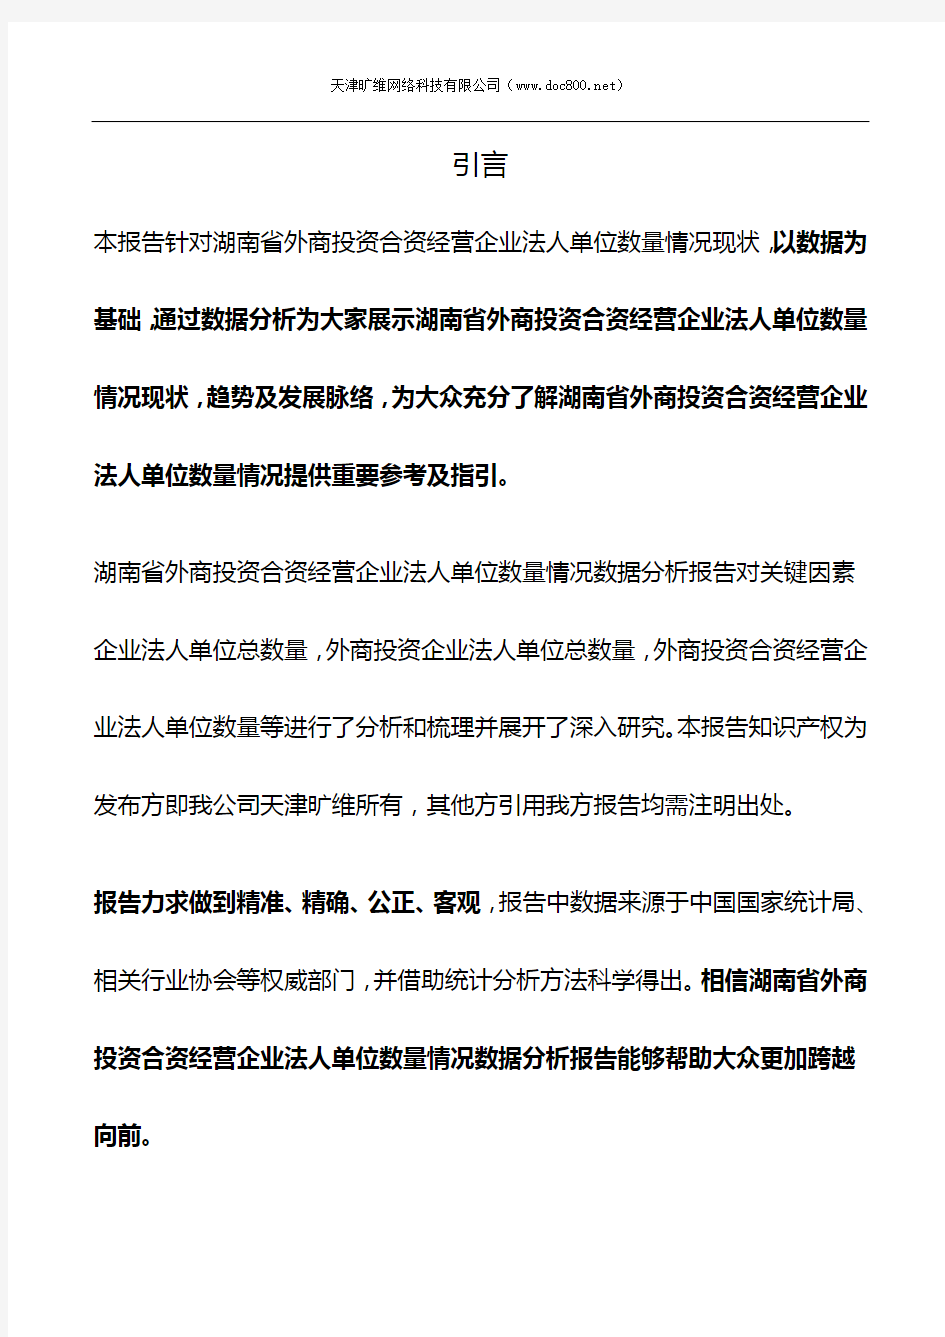 湖南省外商投资合资经营企业法人单位数量情况3年数据分析报告2019版